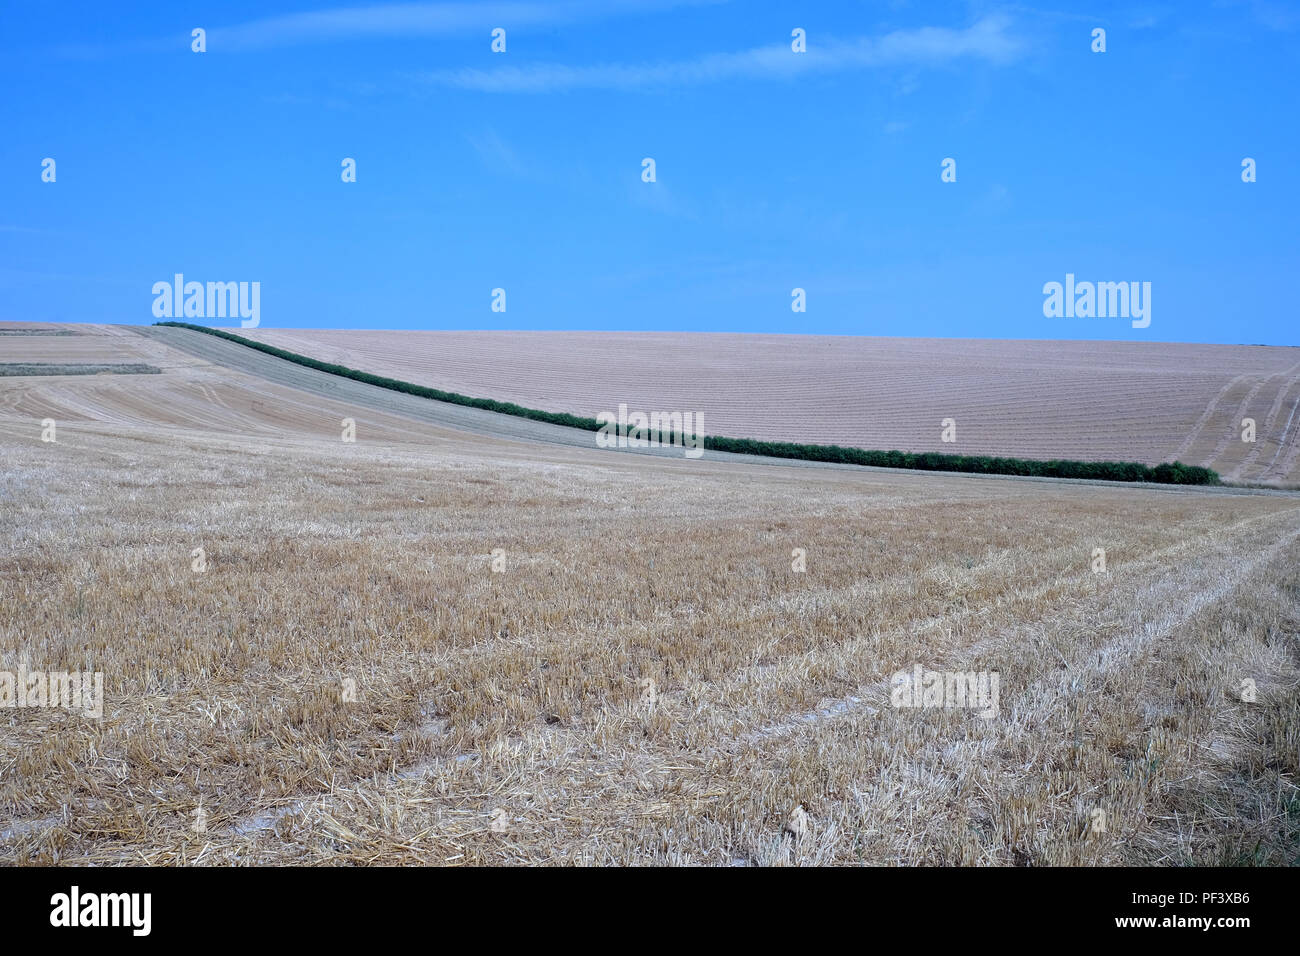 Un verde lunga siepe sottili tagli attraverso il centro di due campi arati un campo è marrone e le altre è d'oro con cielo blu chiaro in alto a questo Foto Stock